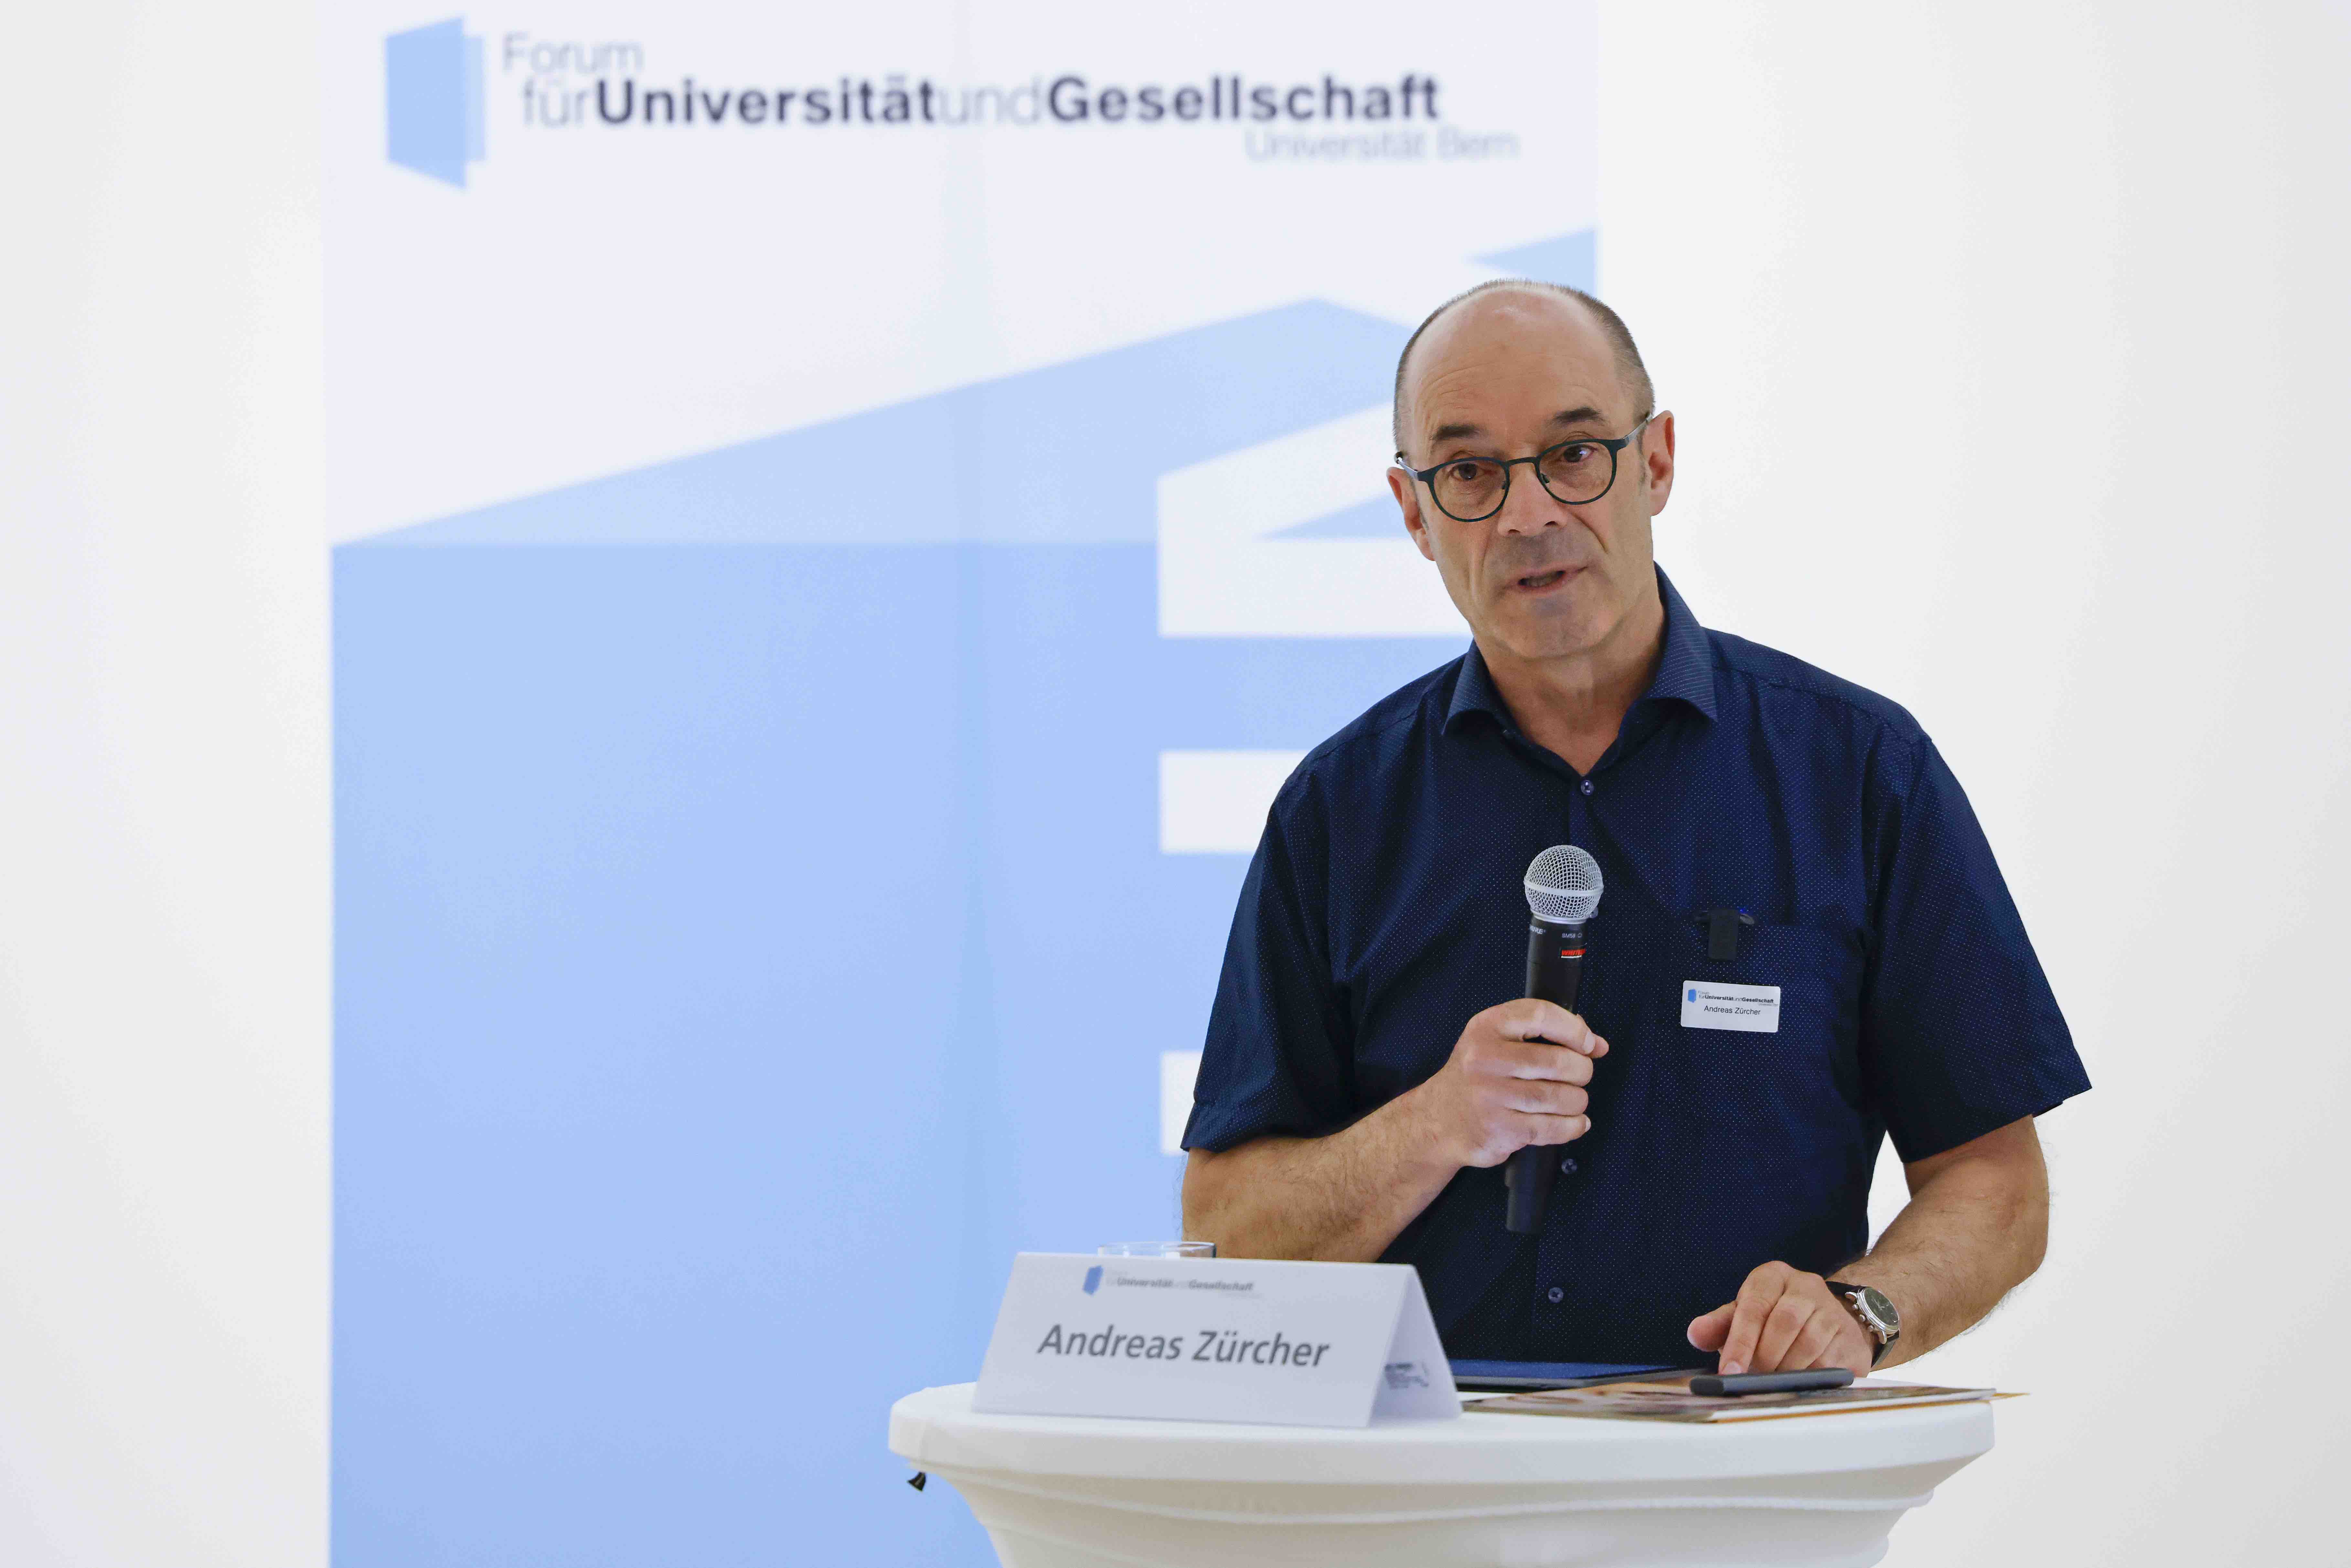 Der Referent Andreas Zürcher steht hinter einem Stehtisch mit weissem Tischtuch und spricht in ein Handmikrofon. Im Hintergrund ist das blau-weisse Logo des Forums für Universität und Gesellschaft sichtbar.